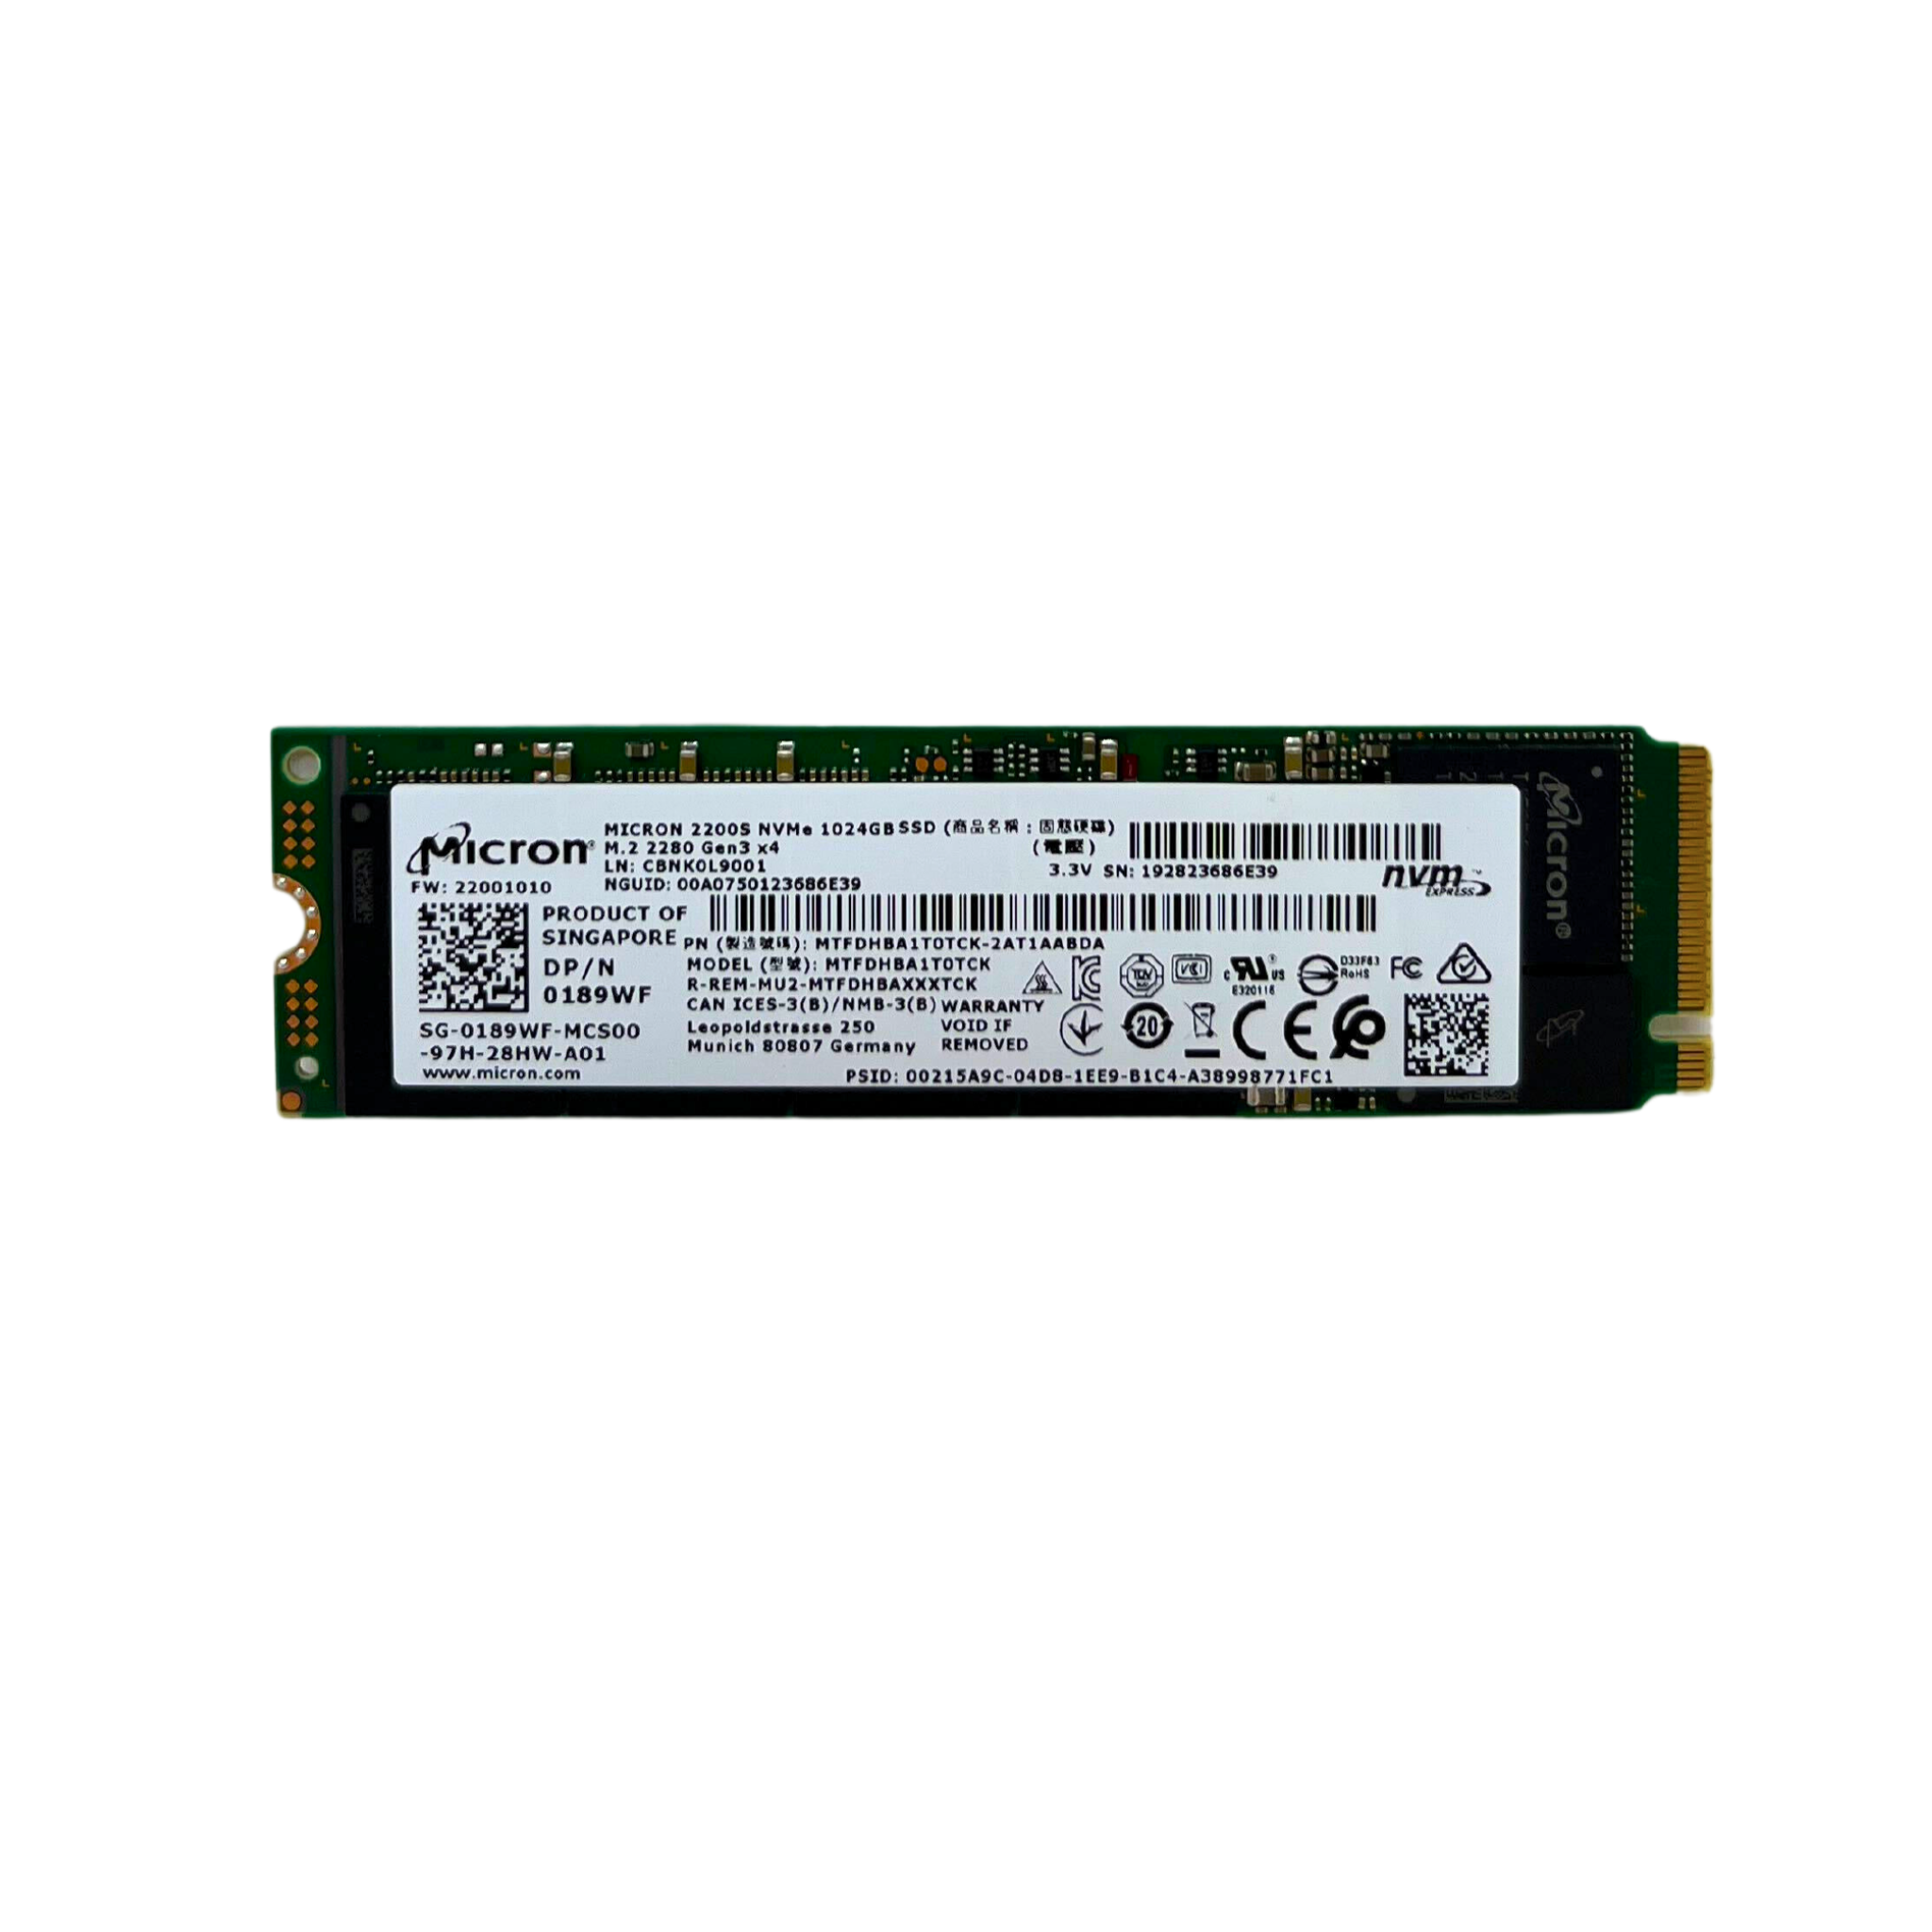 Dell 1TB M.2 2280 NVMe Gen3 x4 SSD Solid State Drive MTFDHBA1T0TCK (0189WF)